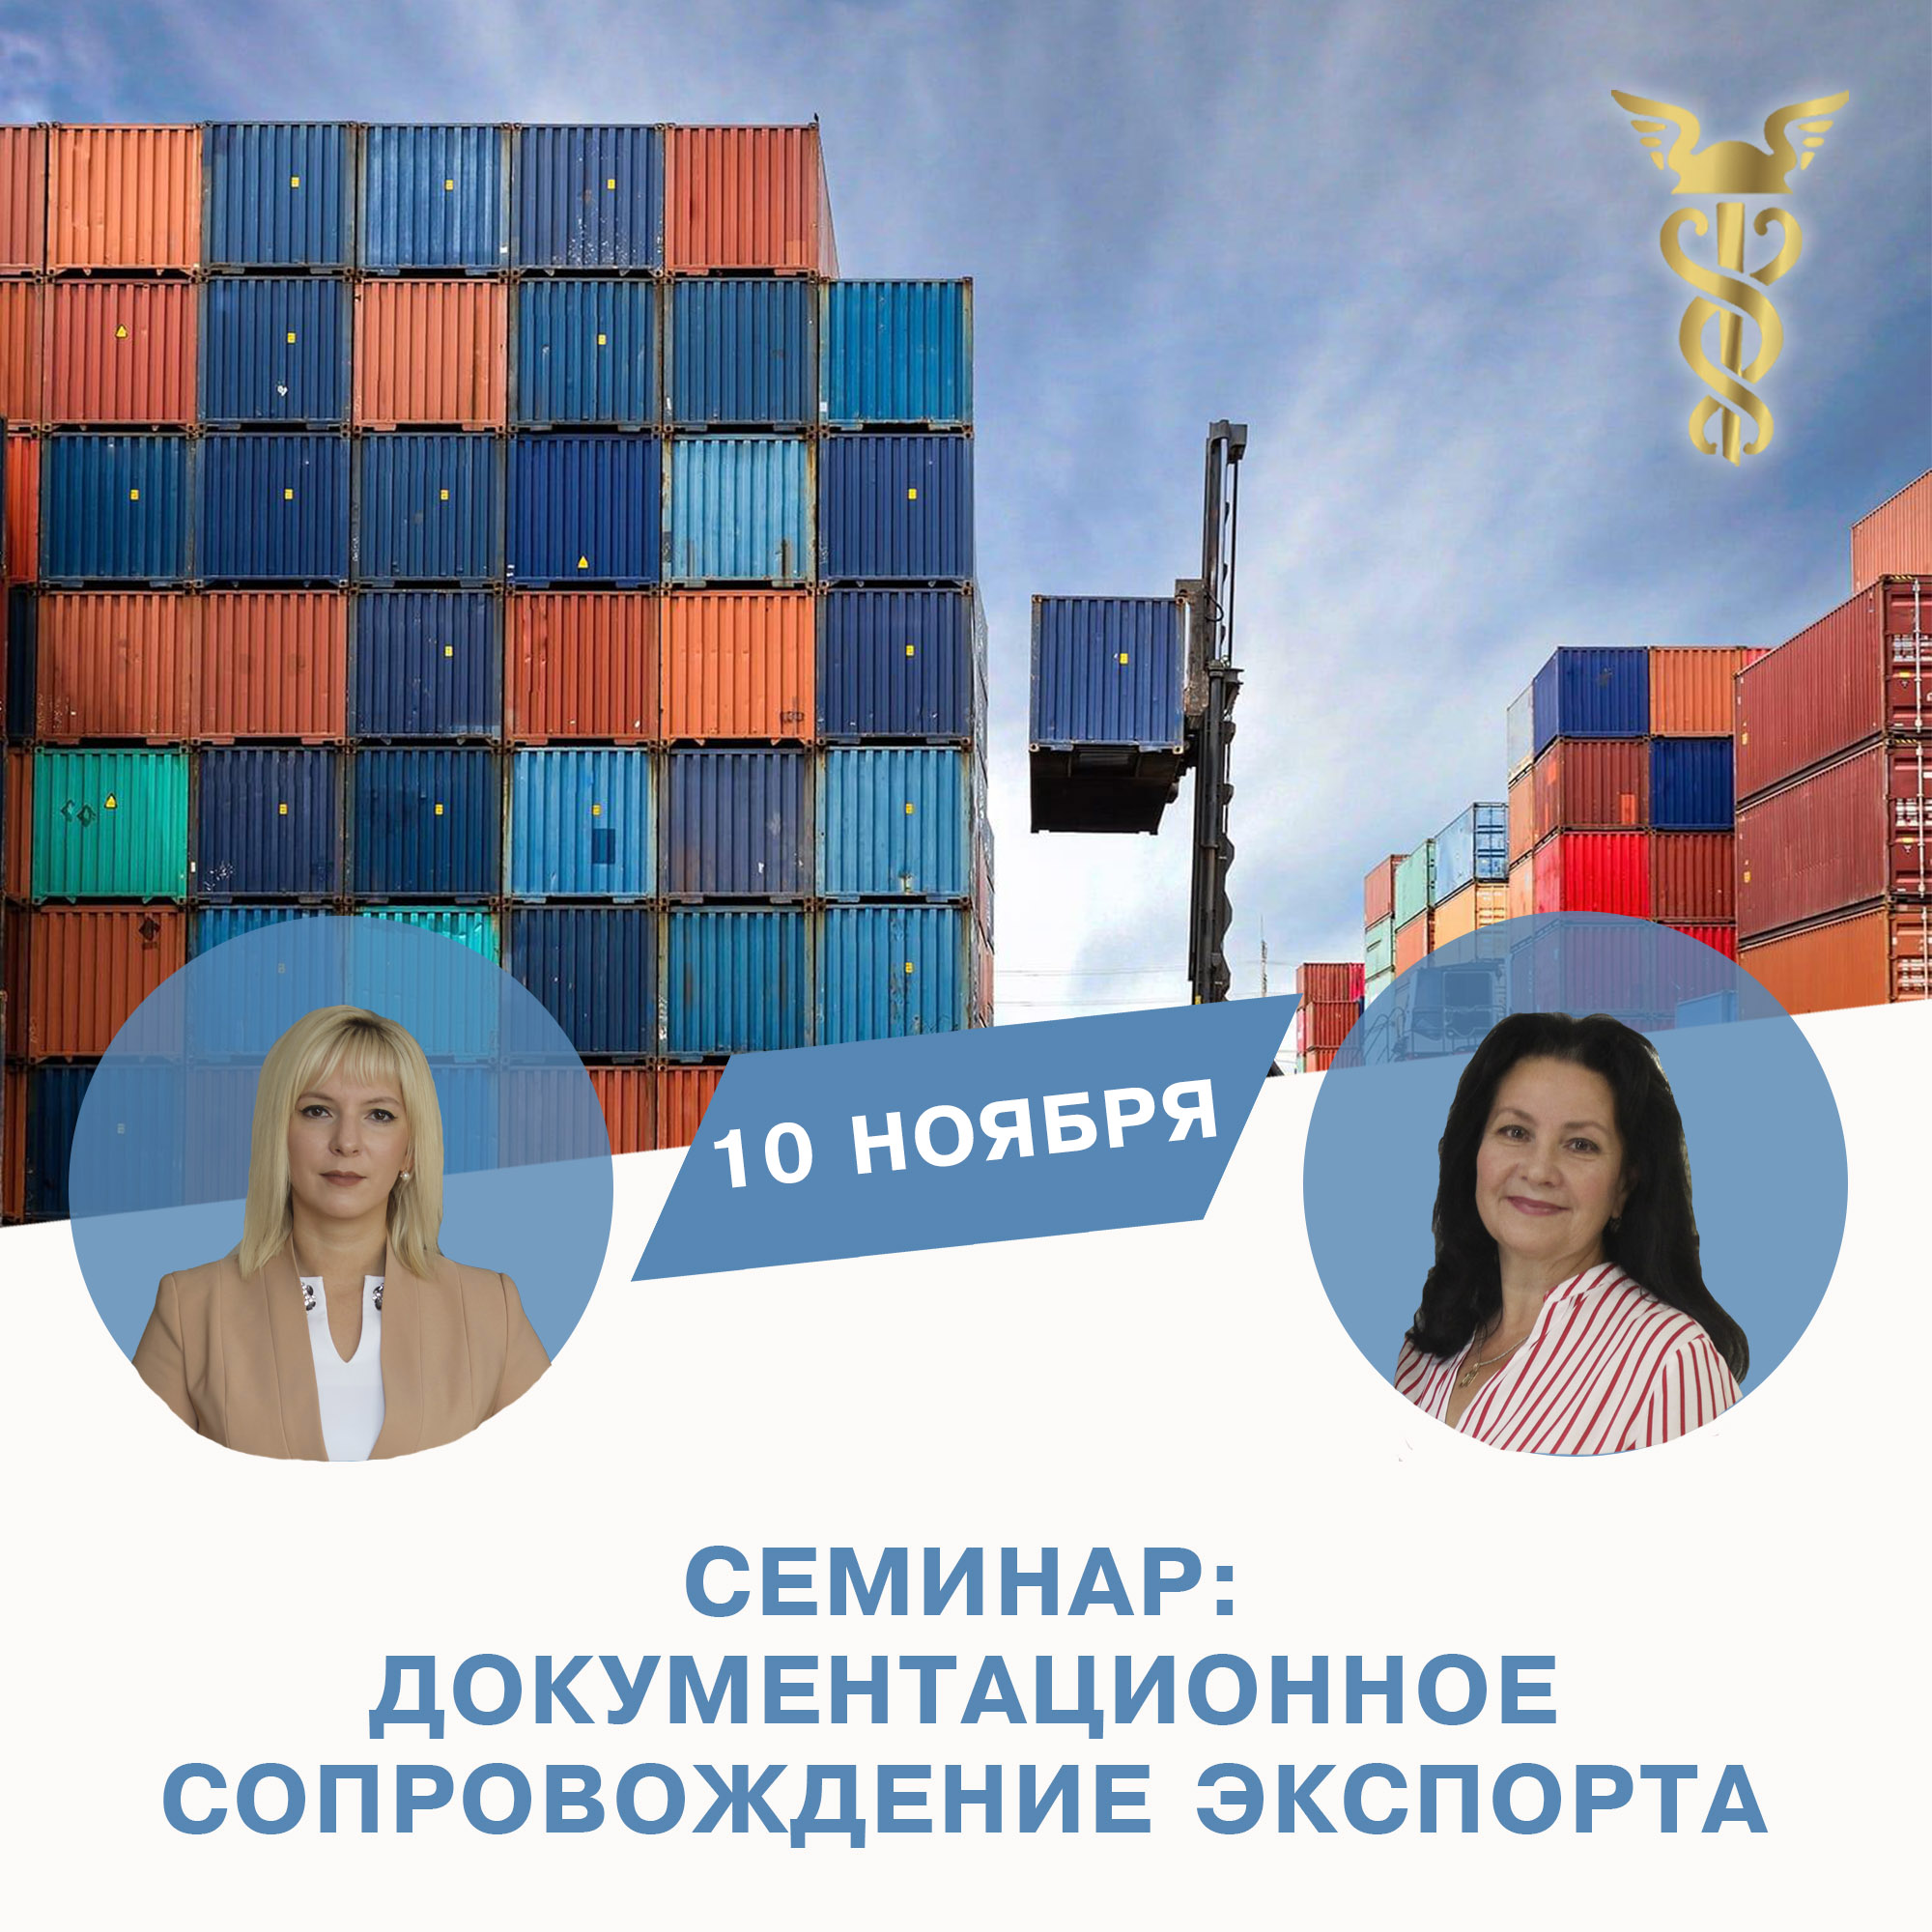 Пензенских предпринимателей приглашают на бесплатный семинар «Документационное сопровождение экспорта»